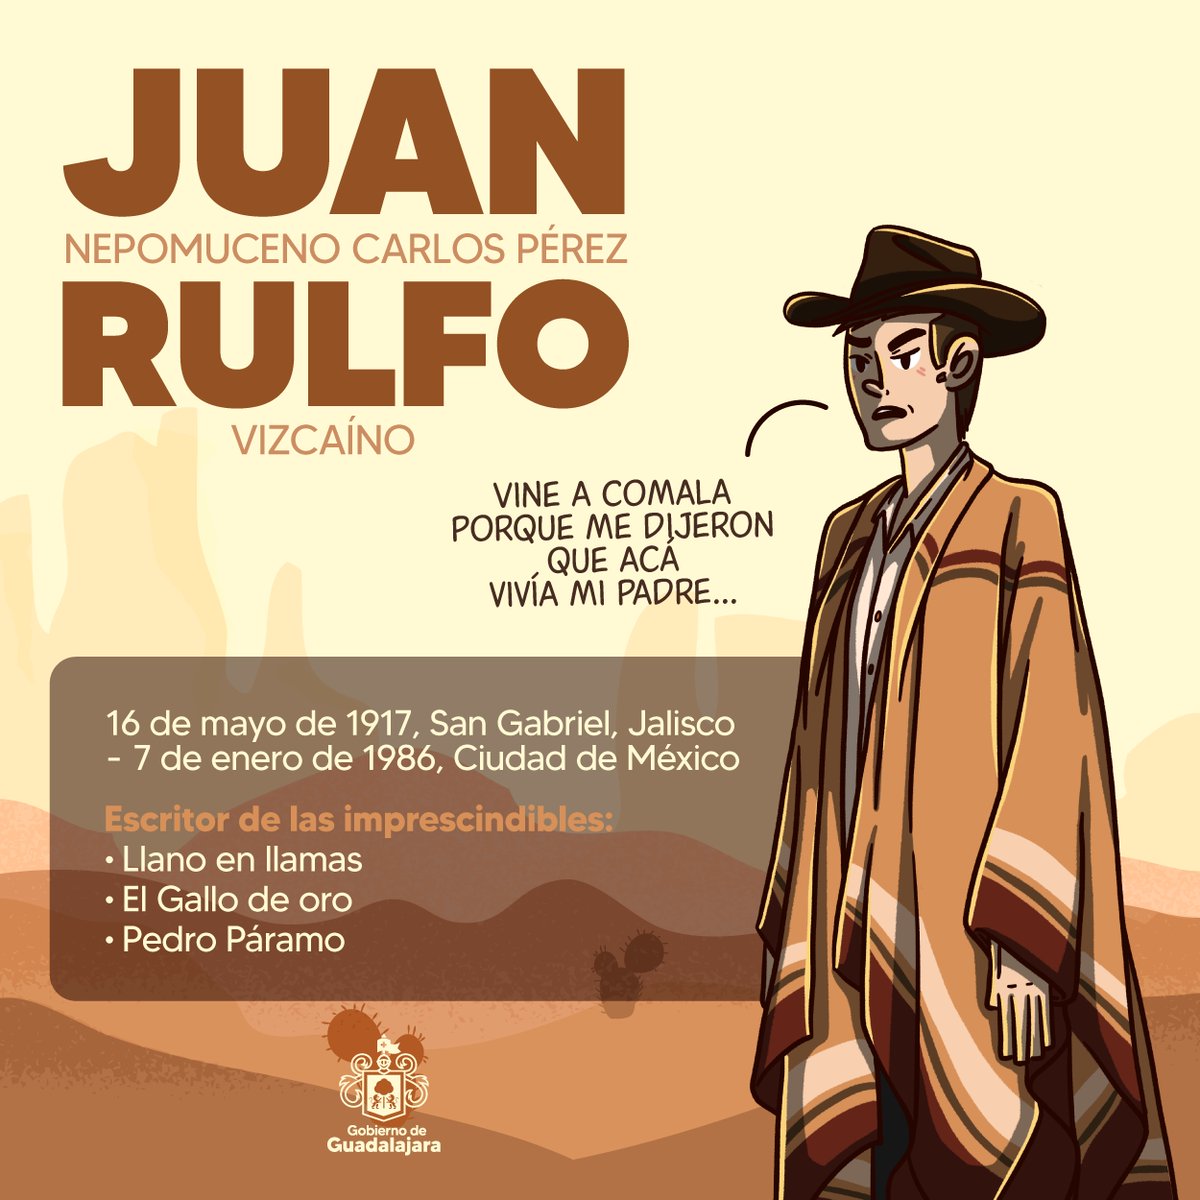 Hoy conmemoramos el 107 aniversario del natalicio de Juan Rulfo. Su legado literario sigue inspirando a generaciones con obras como 'Pedro Páramo' y 'El llano en llamas'. Rulfo, nos dejó un tesoro literario que sigue cautivando a lectores en todo el mundo.